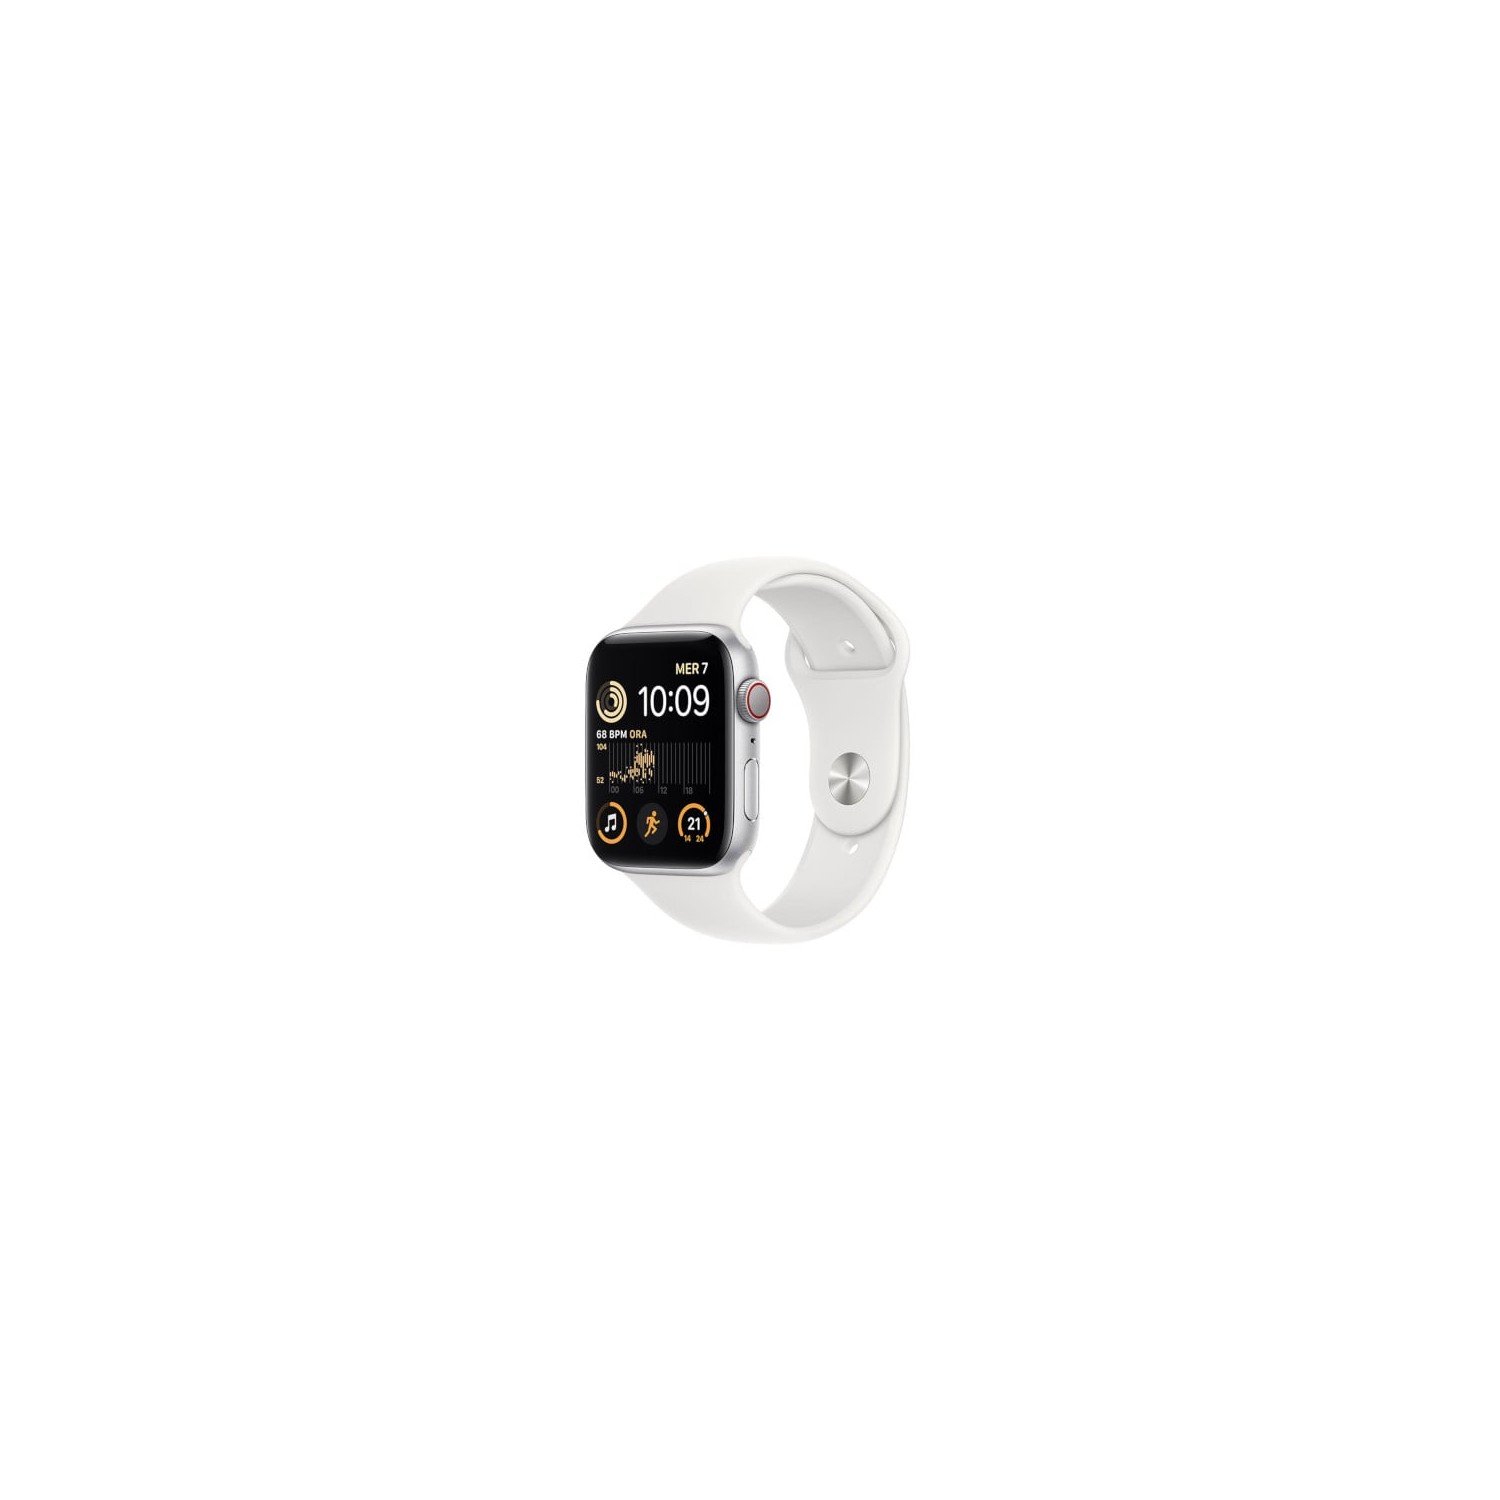 Vendita online Home Apple Watch SE GPS + Cellular 40mm (2ª Gen.)  Starlight costo  339,99 €  spedizione in 24h-48h pagmamento PayPal Contrassegno